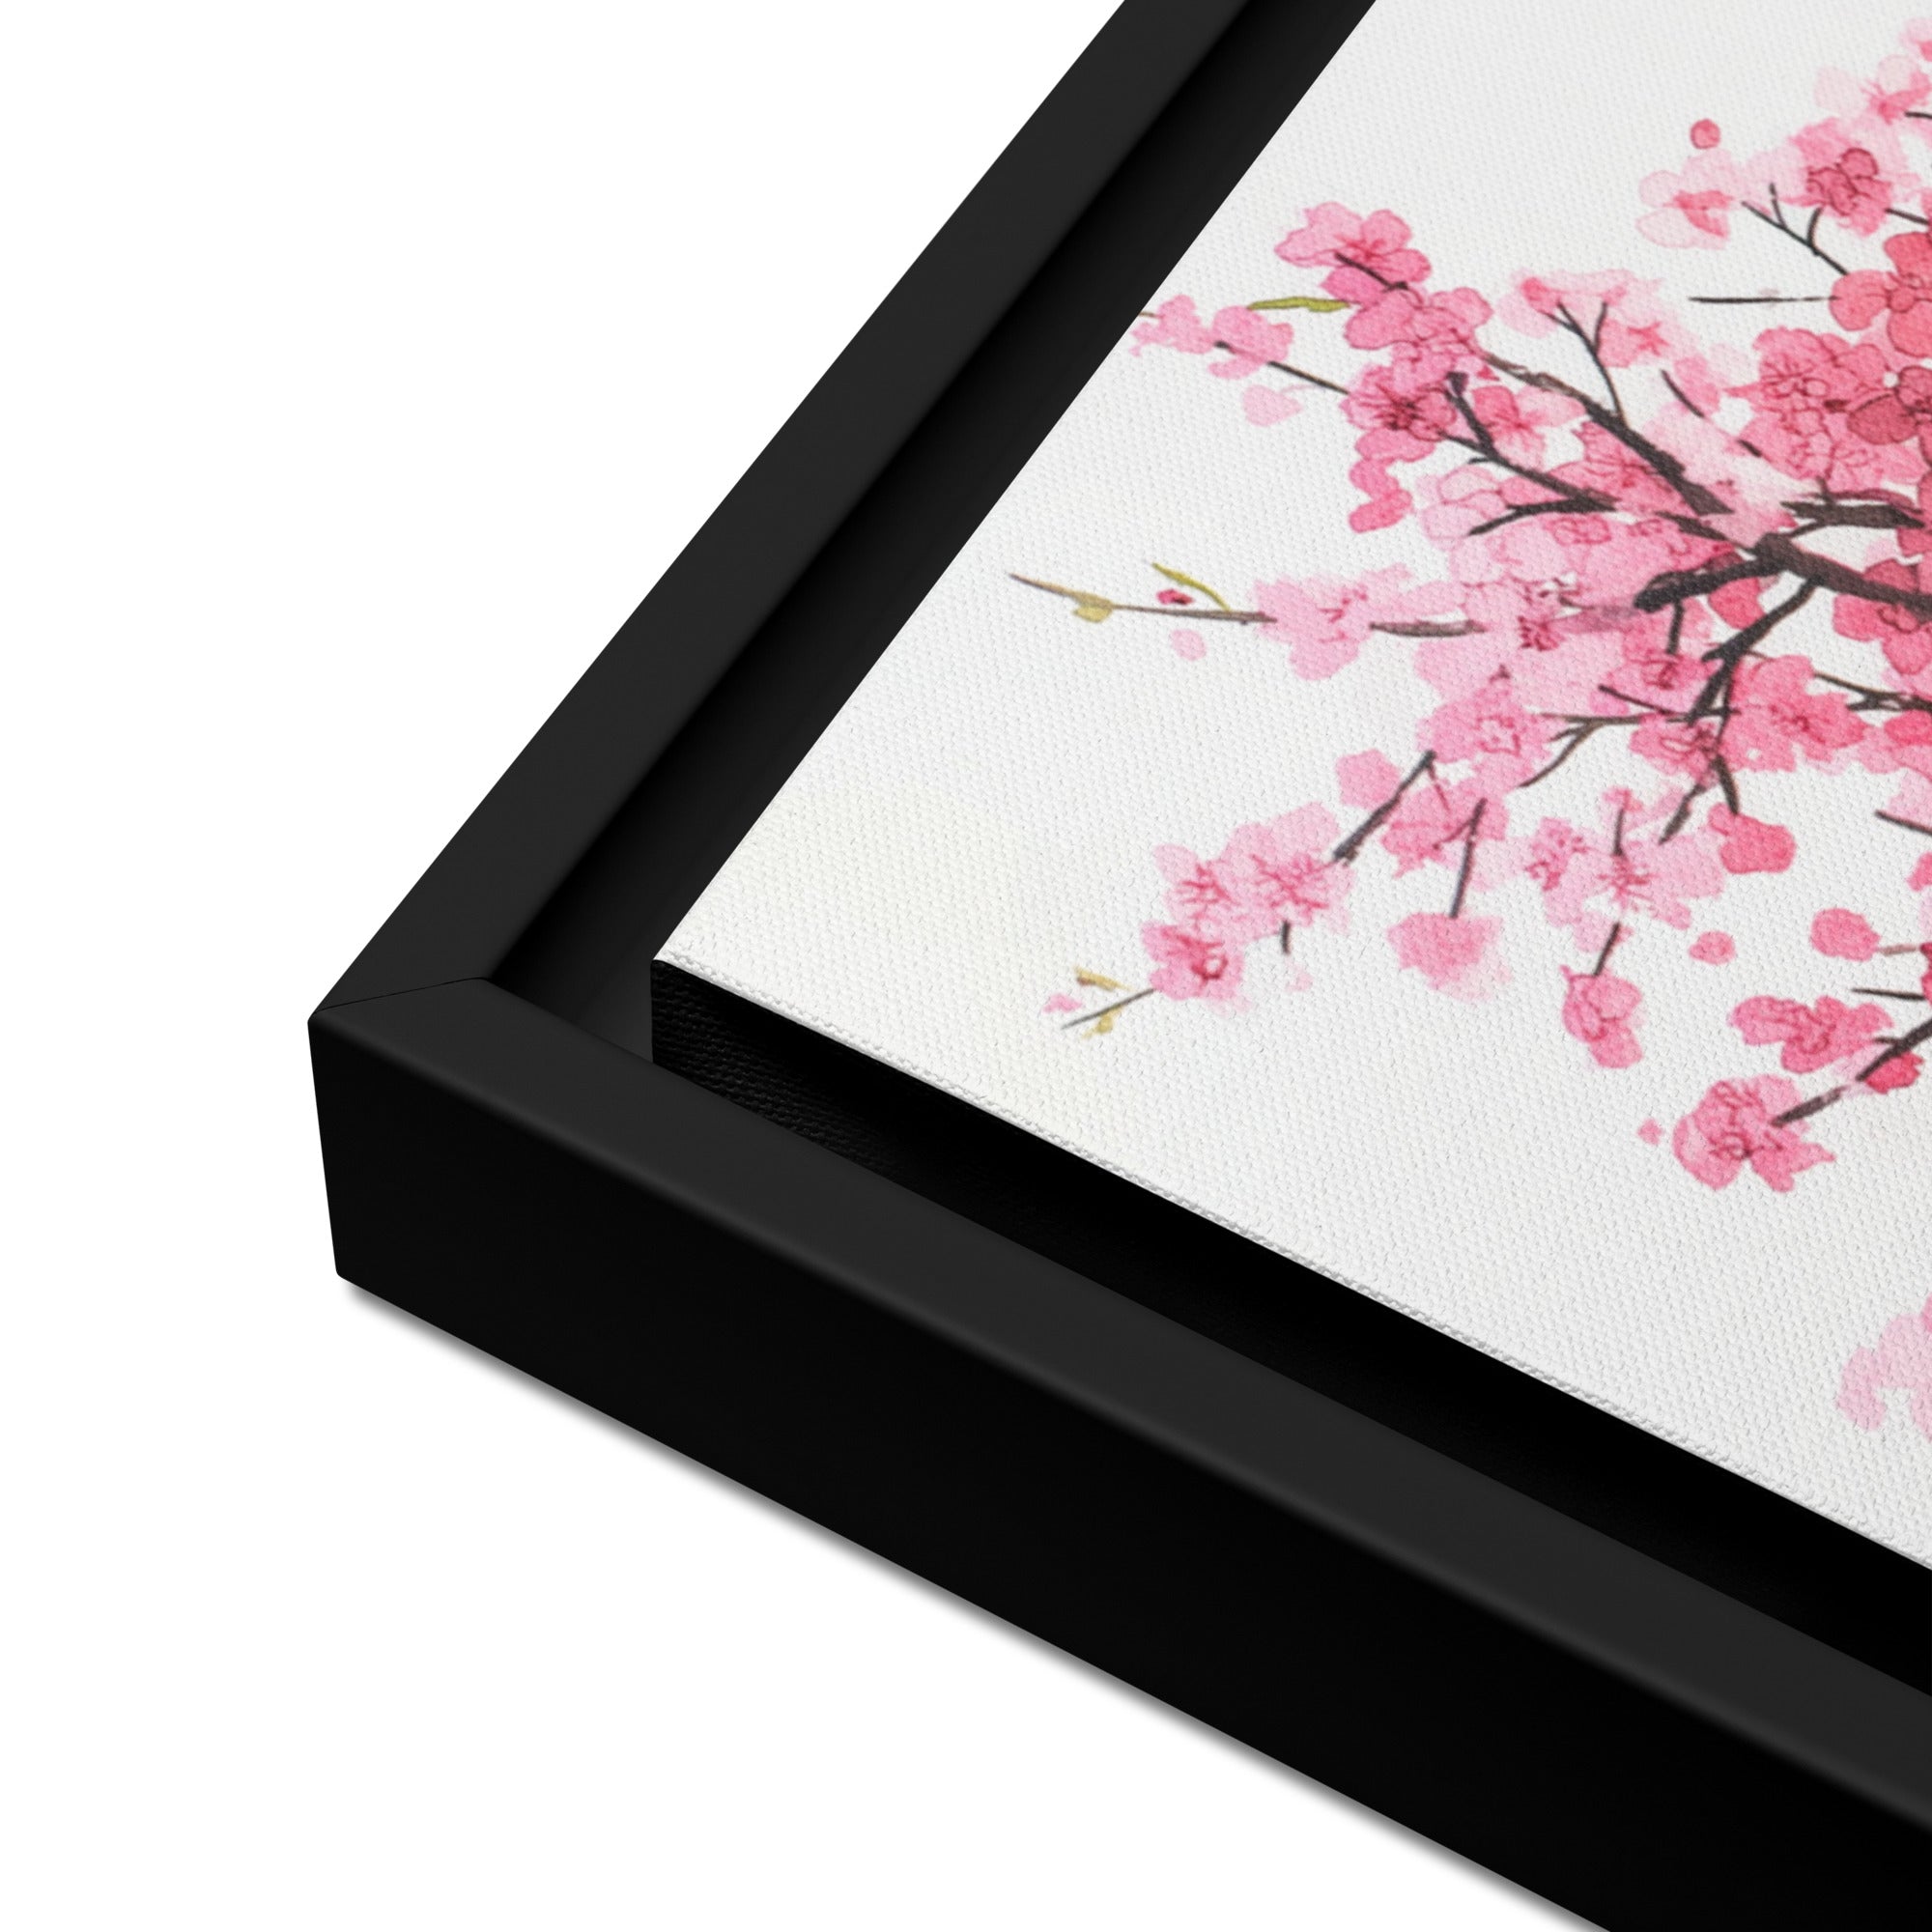 Cherry Blossom - Framed canvas unique art - Renée Laurént